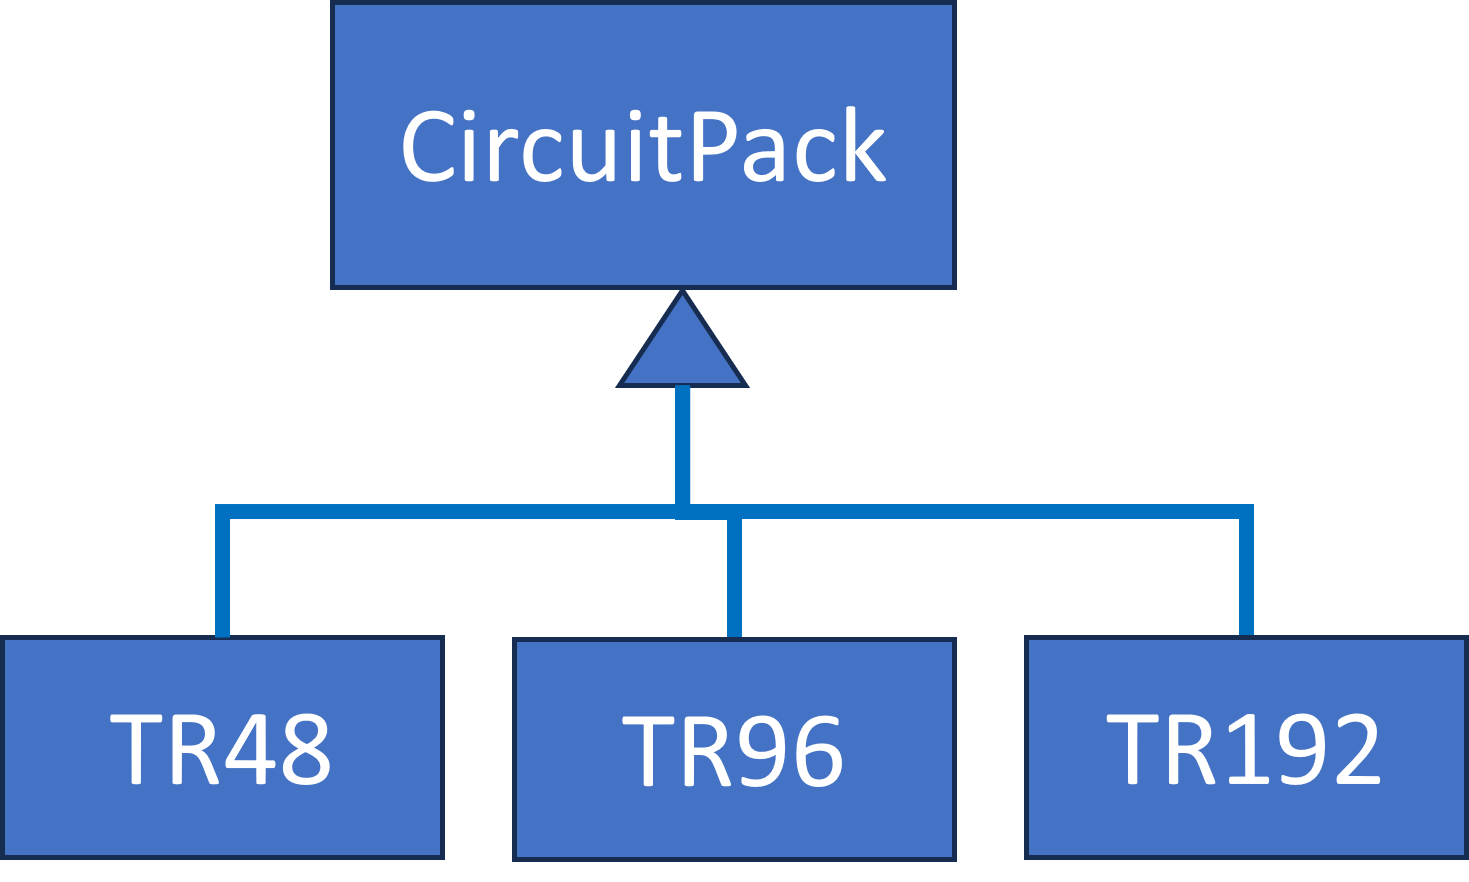 CircuitPack UML Class Diagram